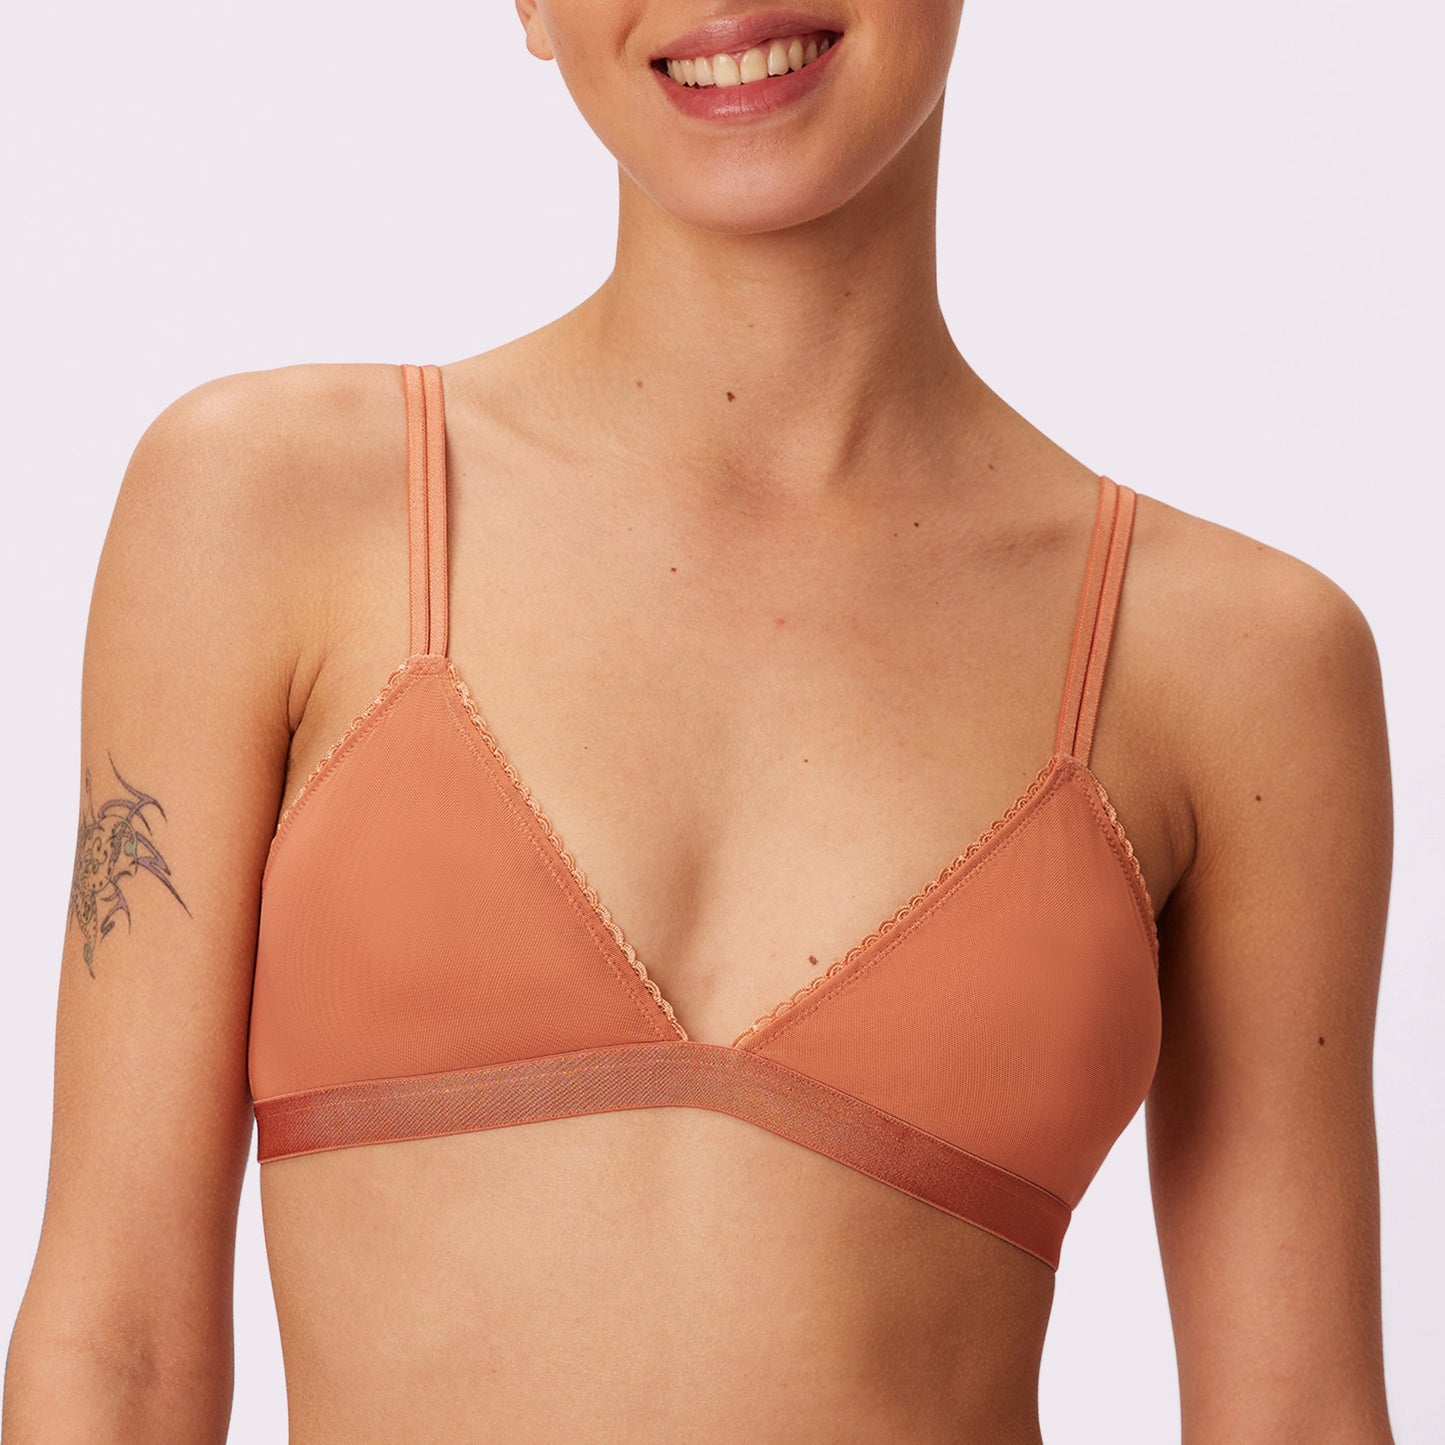 Floral lace triangle bra with straps - bright orange - Undiz